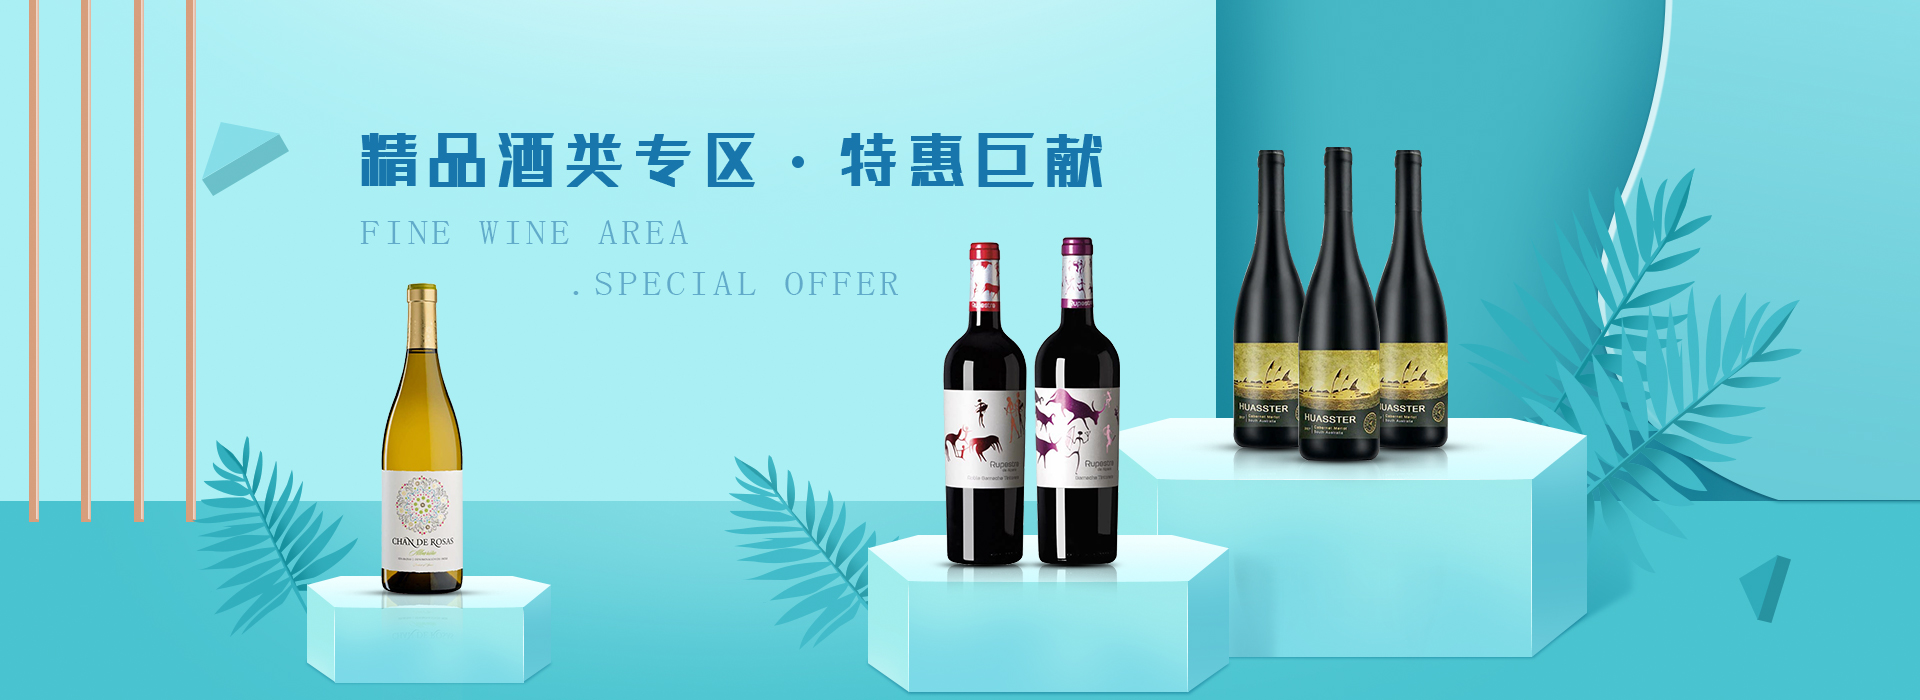 精品红酒零售商家-福莱沃酒业广州有限公司